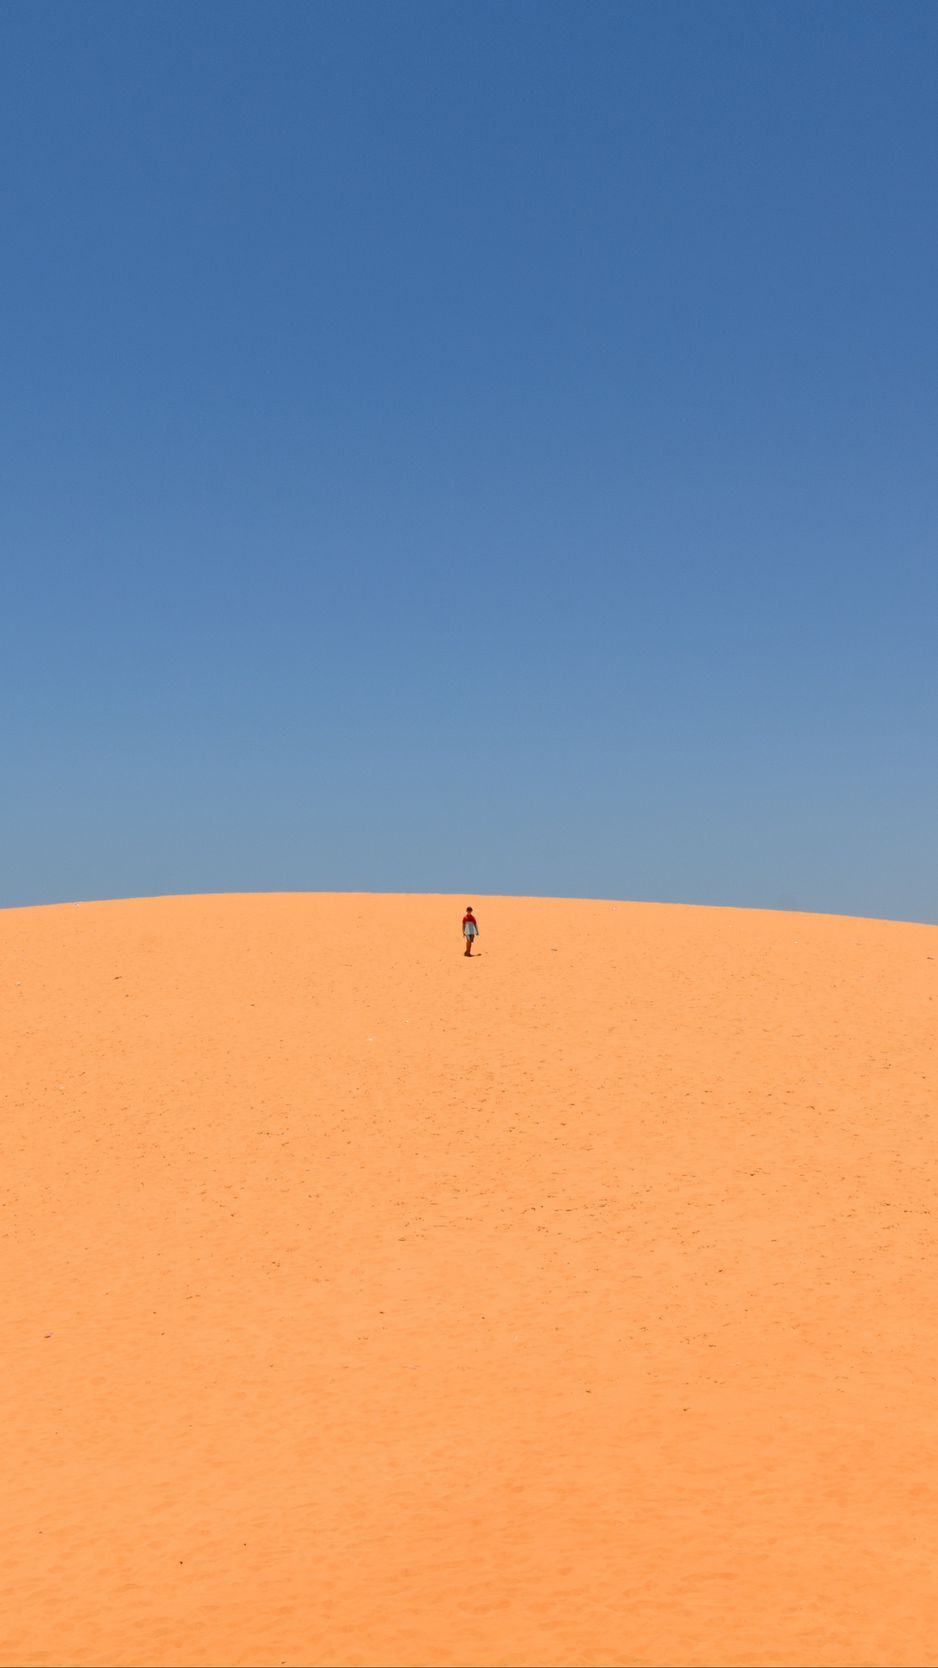 Download wallpaper 938x1668 desert, sand, man, hill, sky, clean